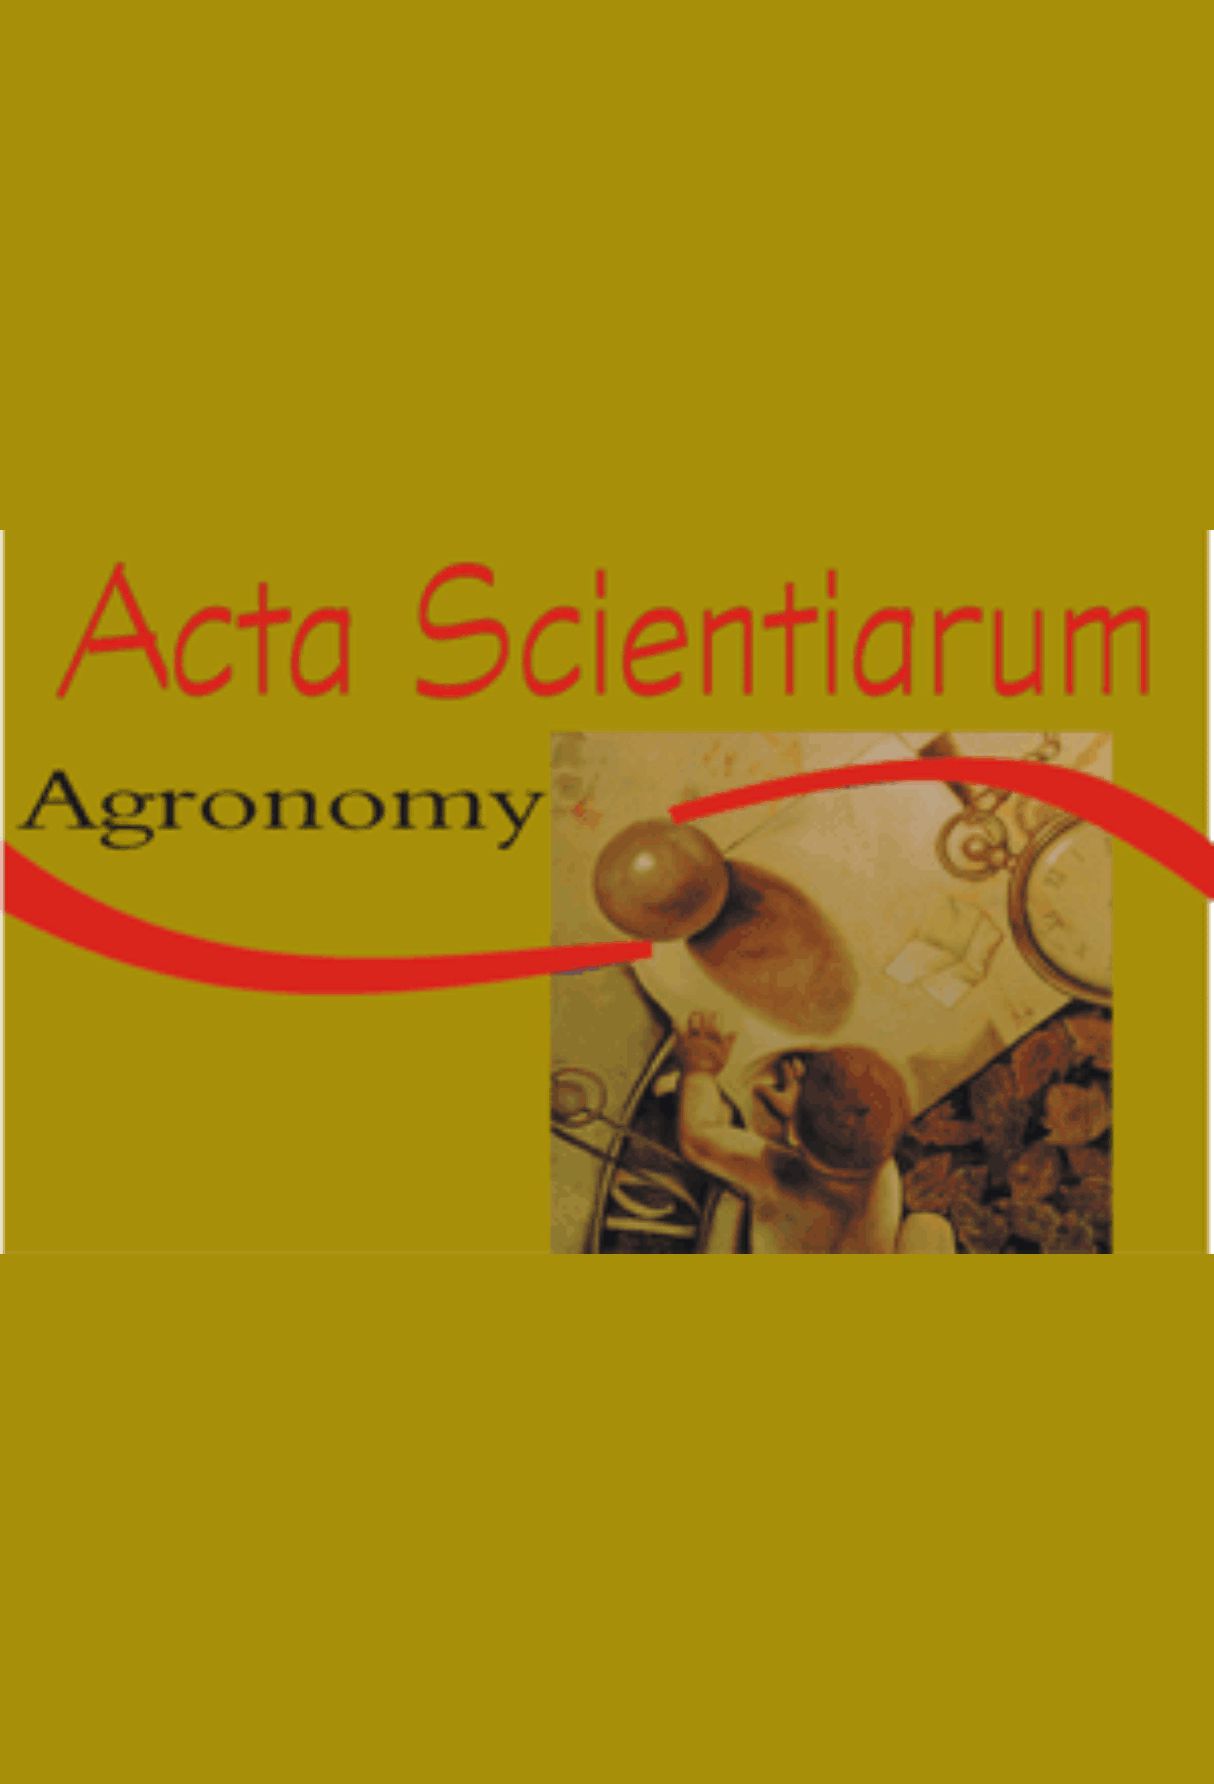 Capa: Acta Scientiarum Agronomy